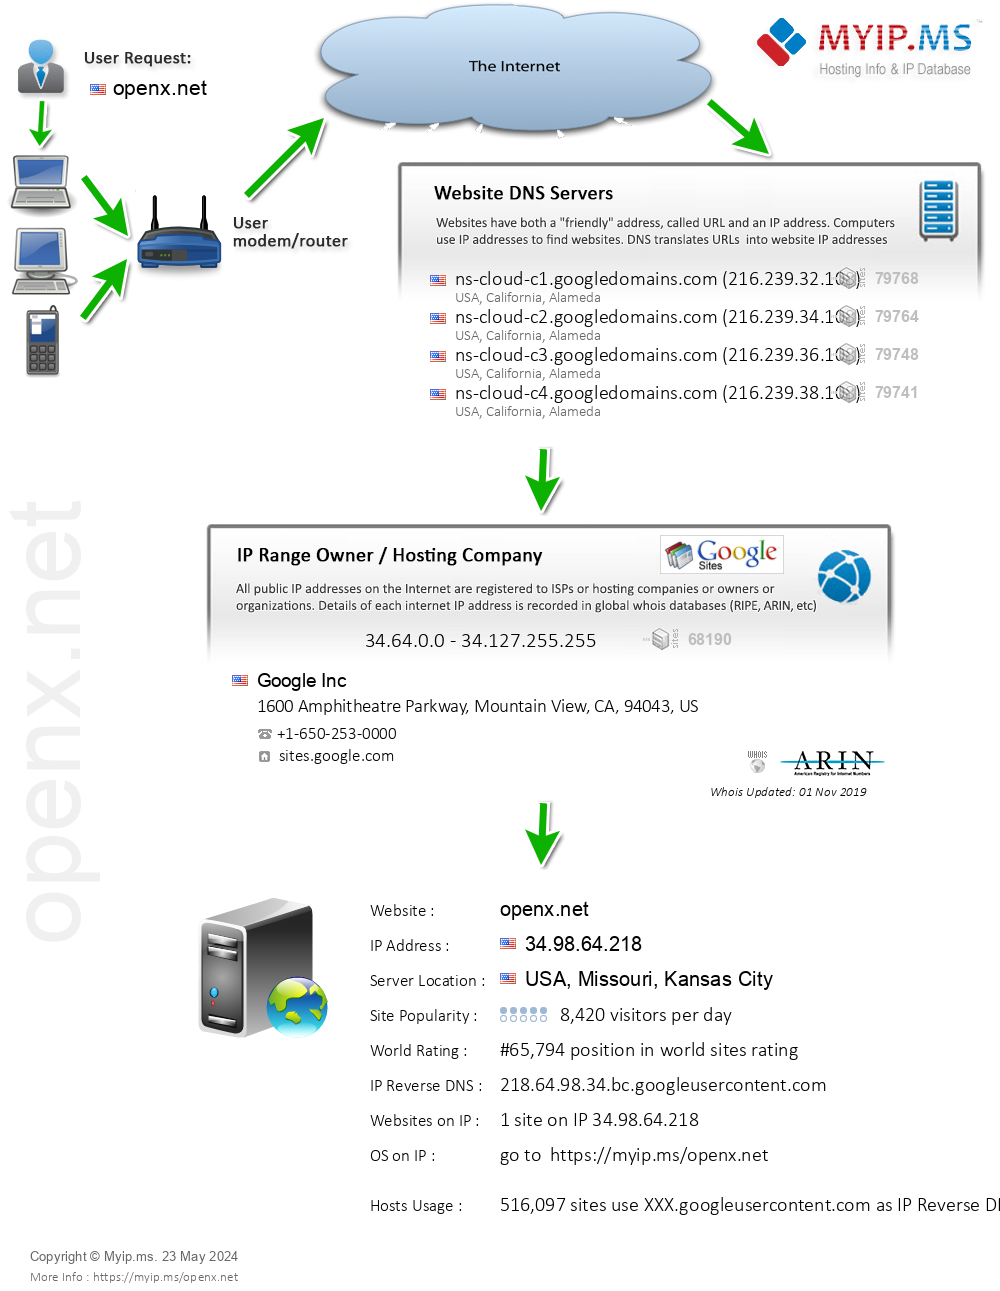 Openx.net - Website Hosting Visual IP Diagram